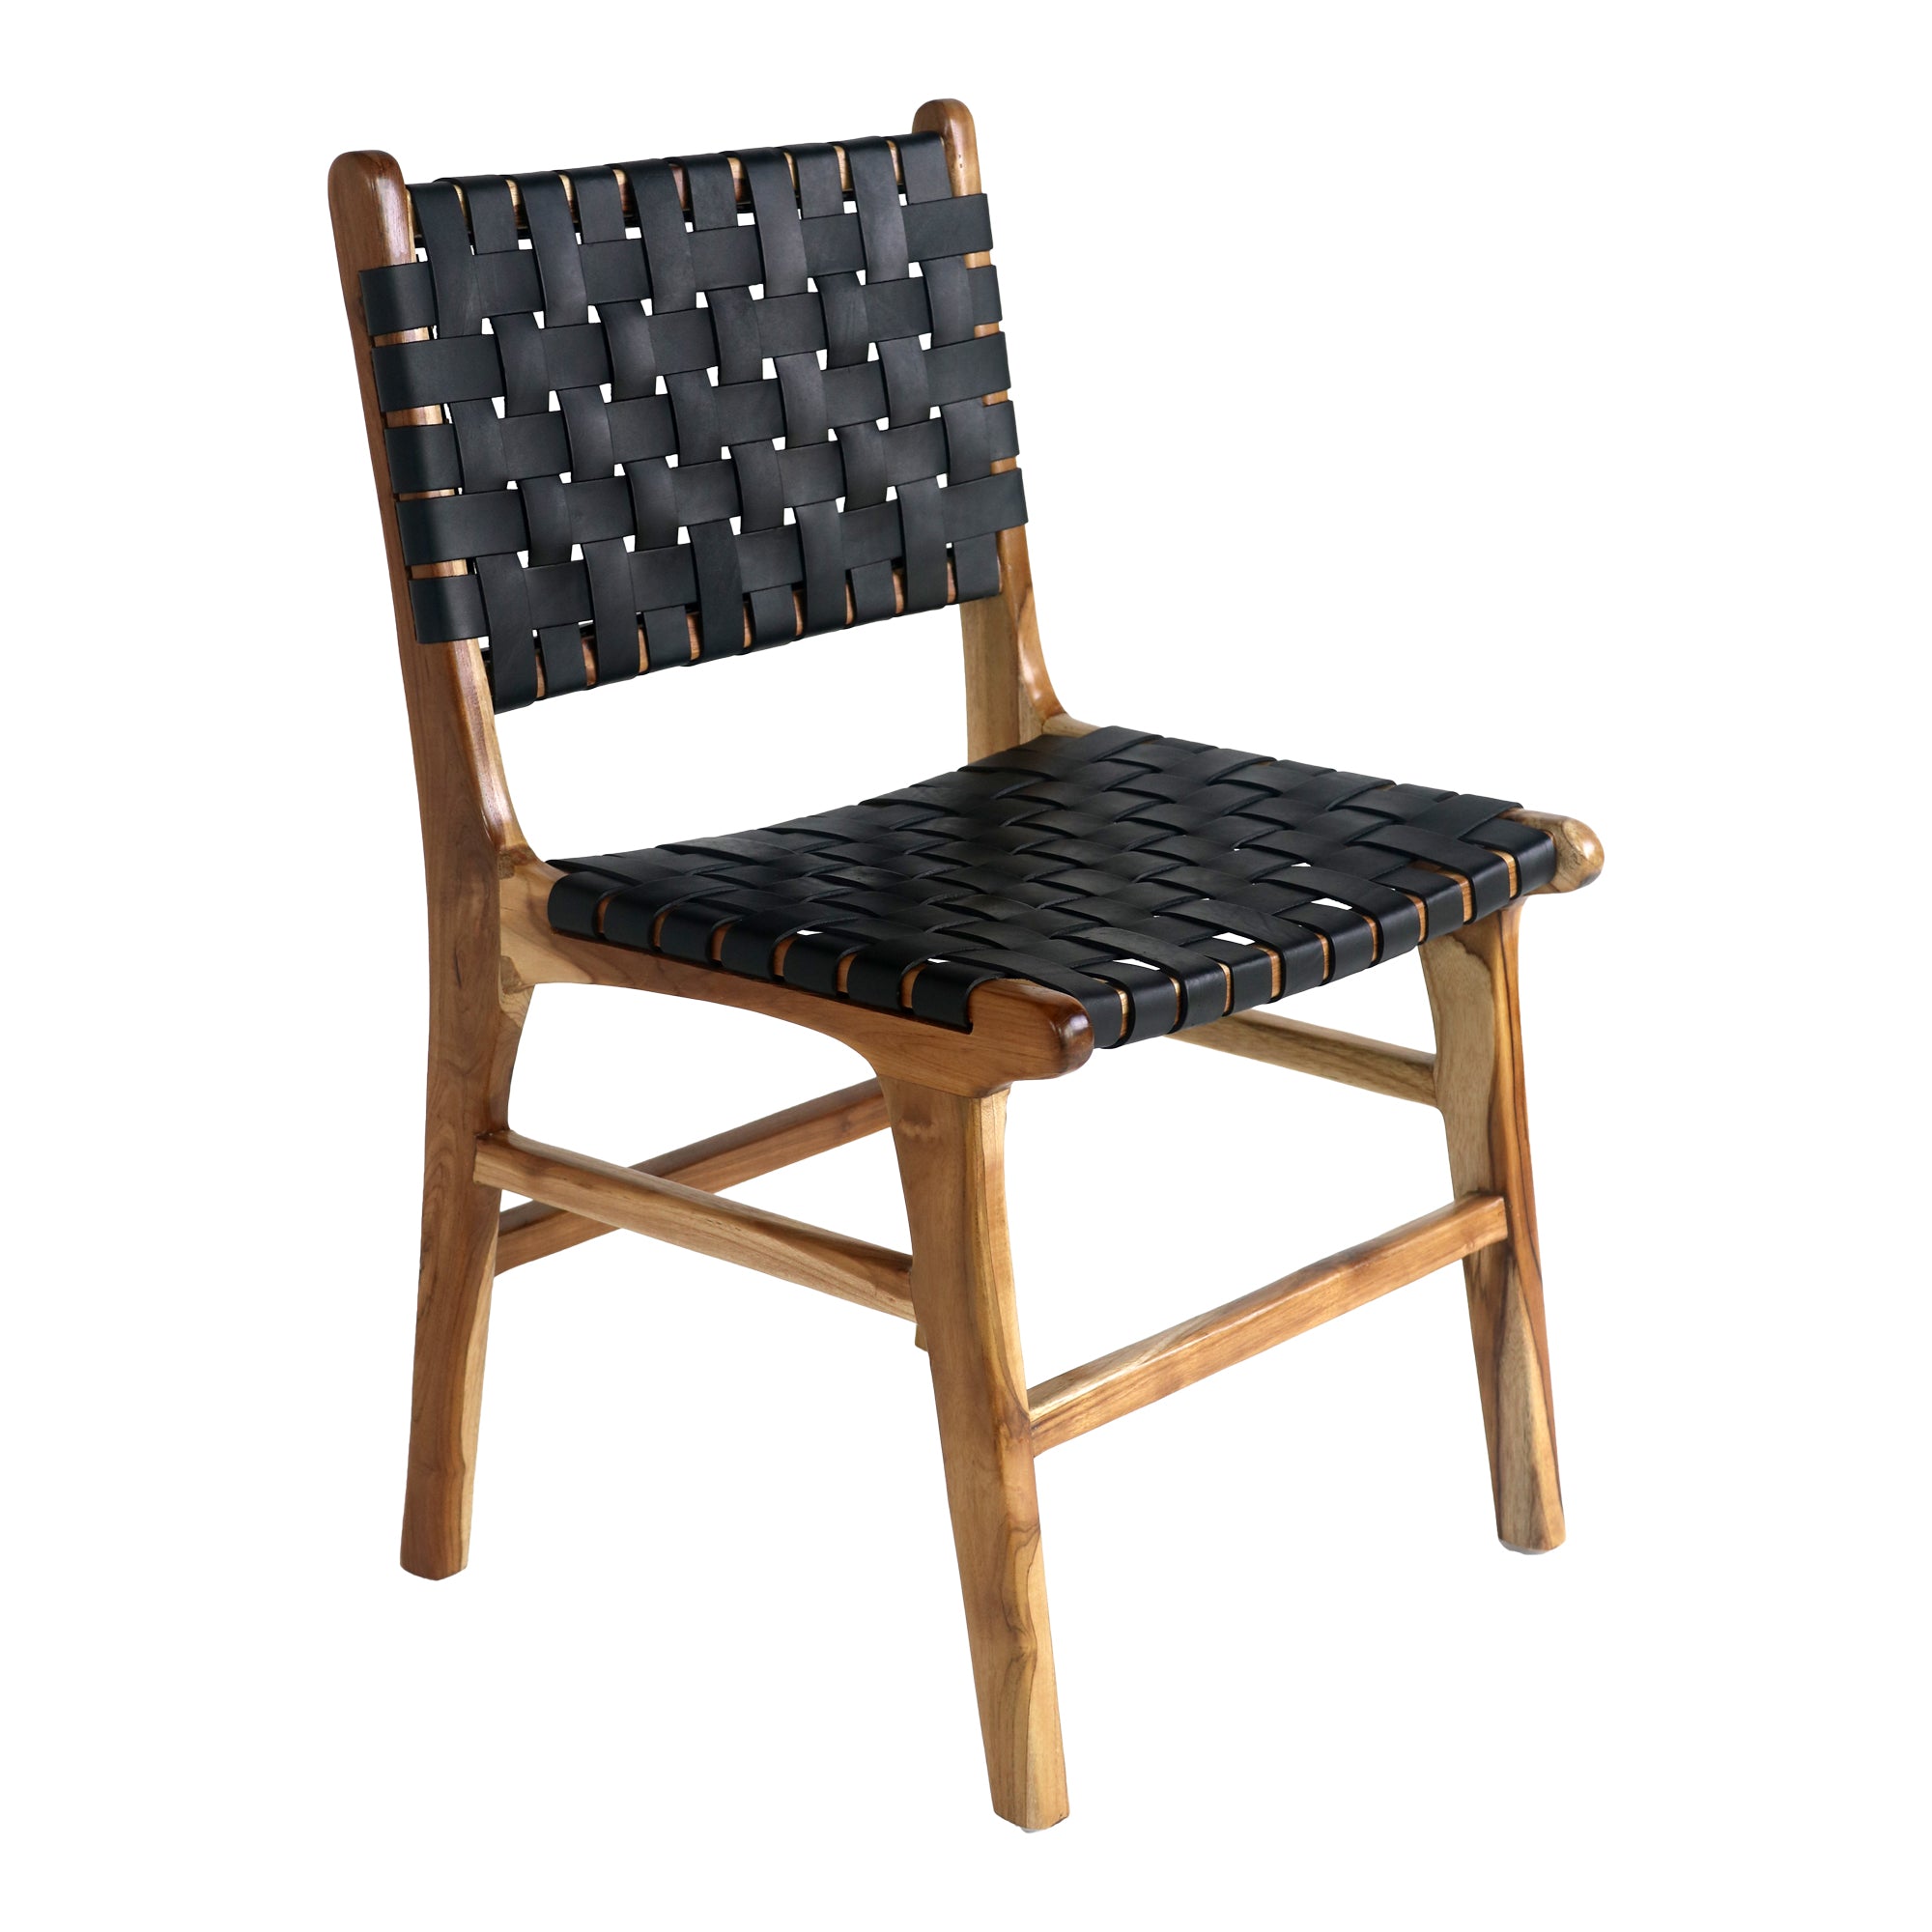 Se Perugia Spisebordsstol - Spisebordsstol I Læder, Sort Med Teak Ben Sæt af 2 stk. hos Billige Bolig Møbler